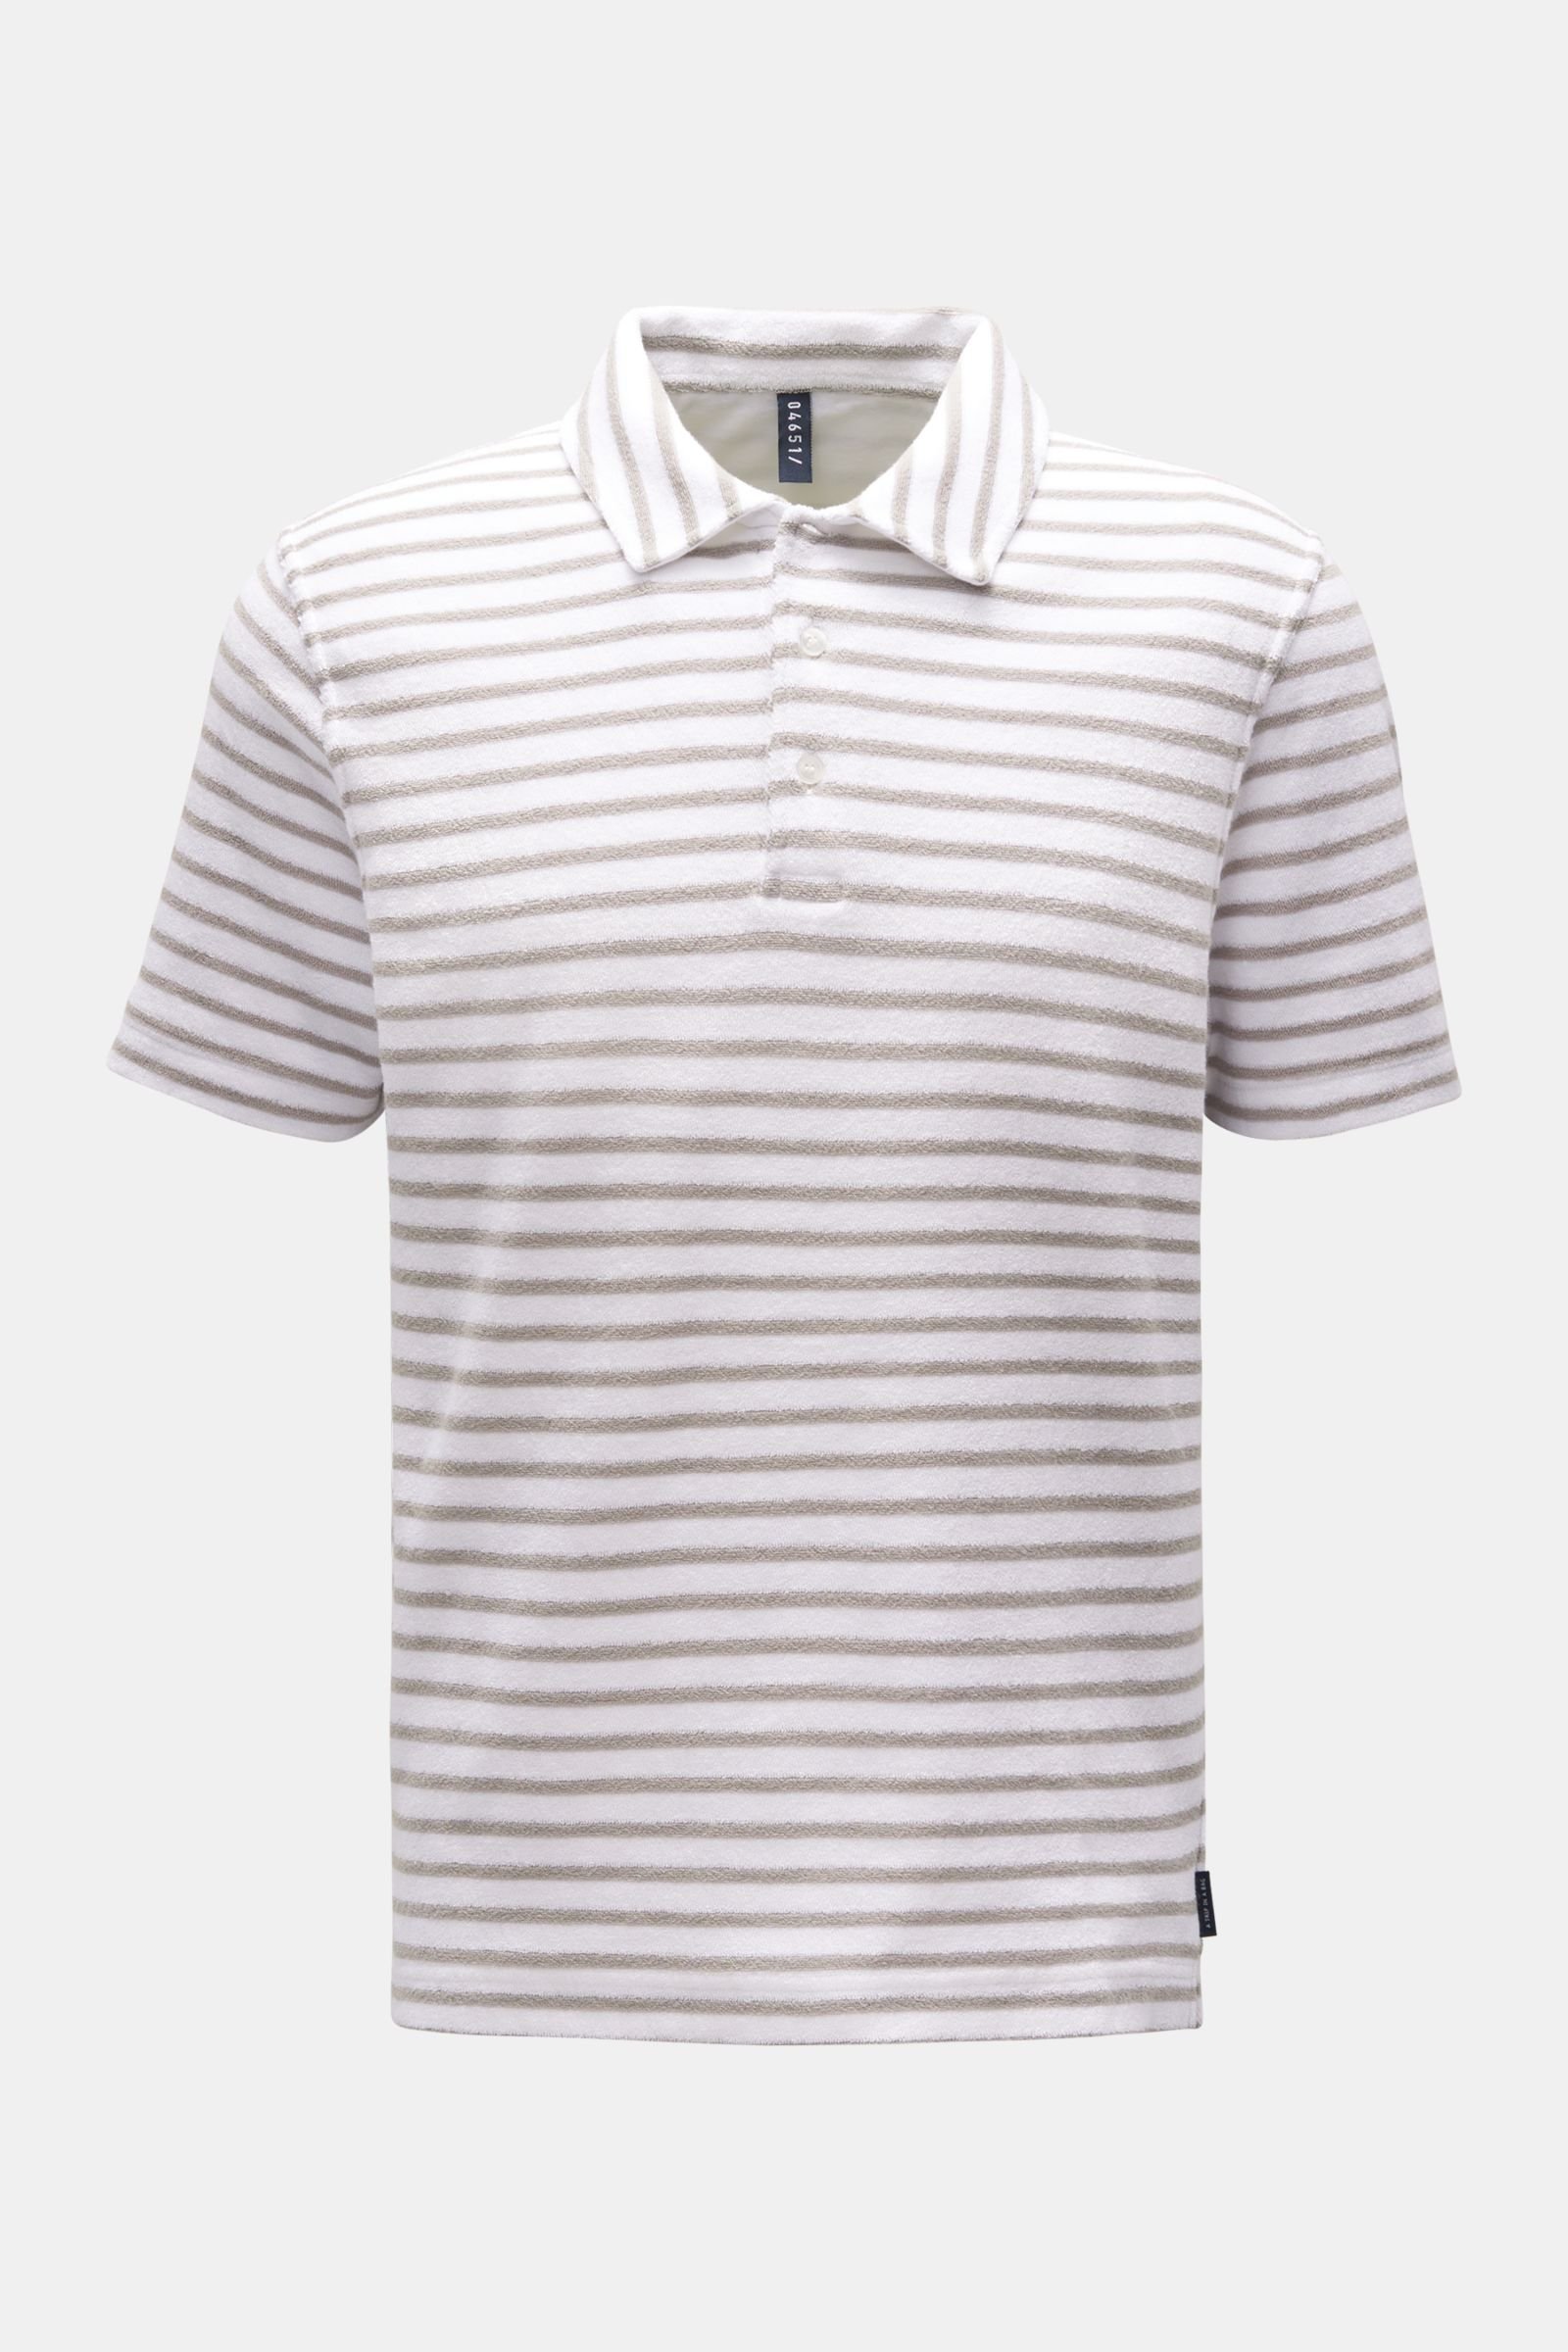 Terry polo shirt 'Terry Stripe Polo' grey/white striped